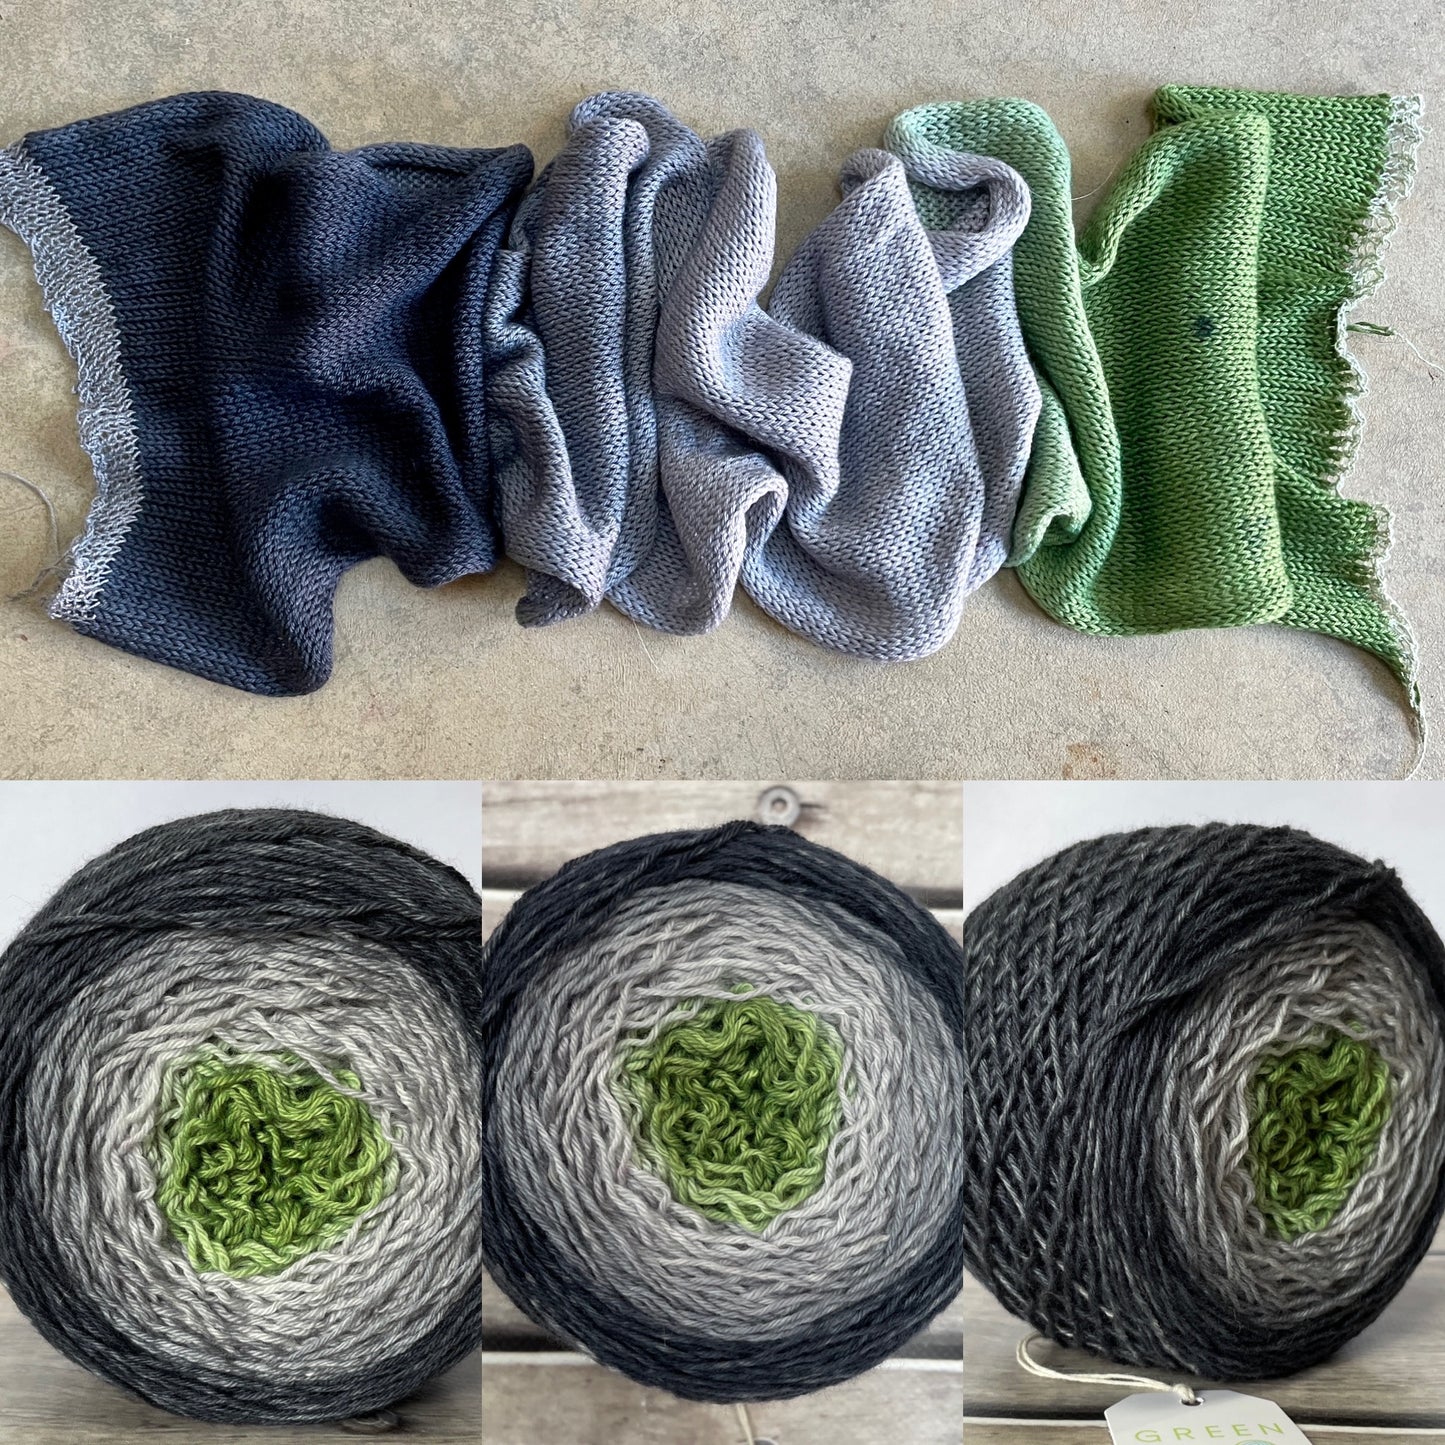 Mossy Stone - 4 ply sock yarn - 100gms - Darjeeling